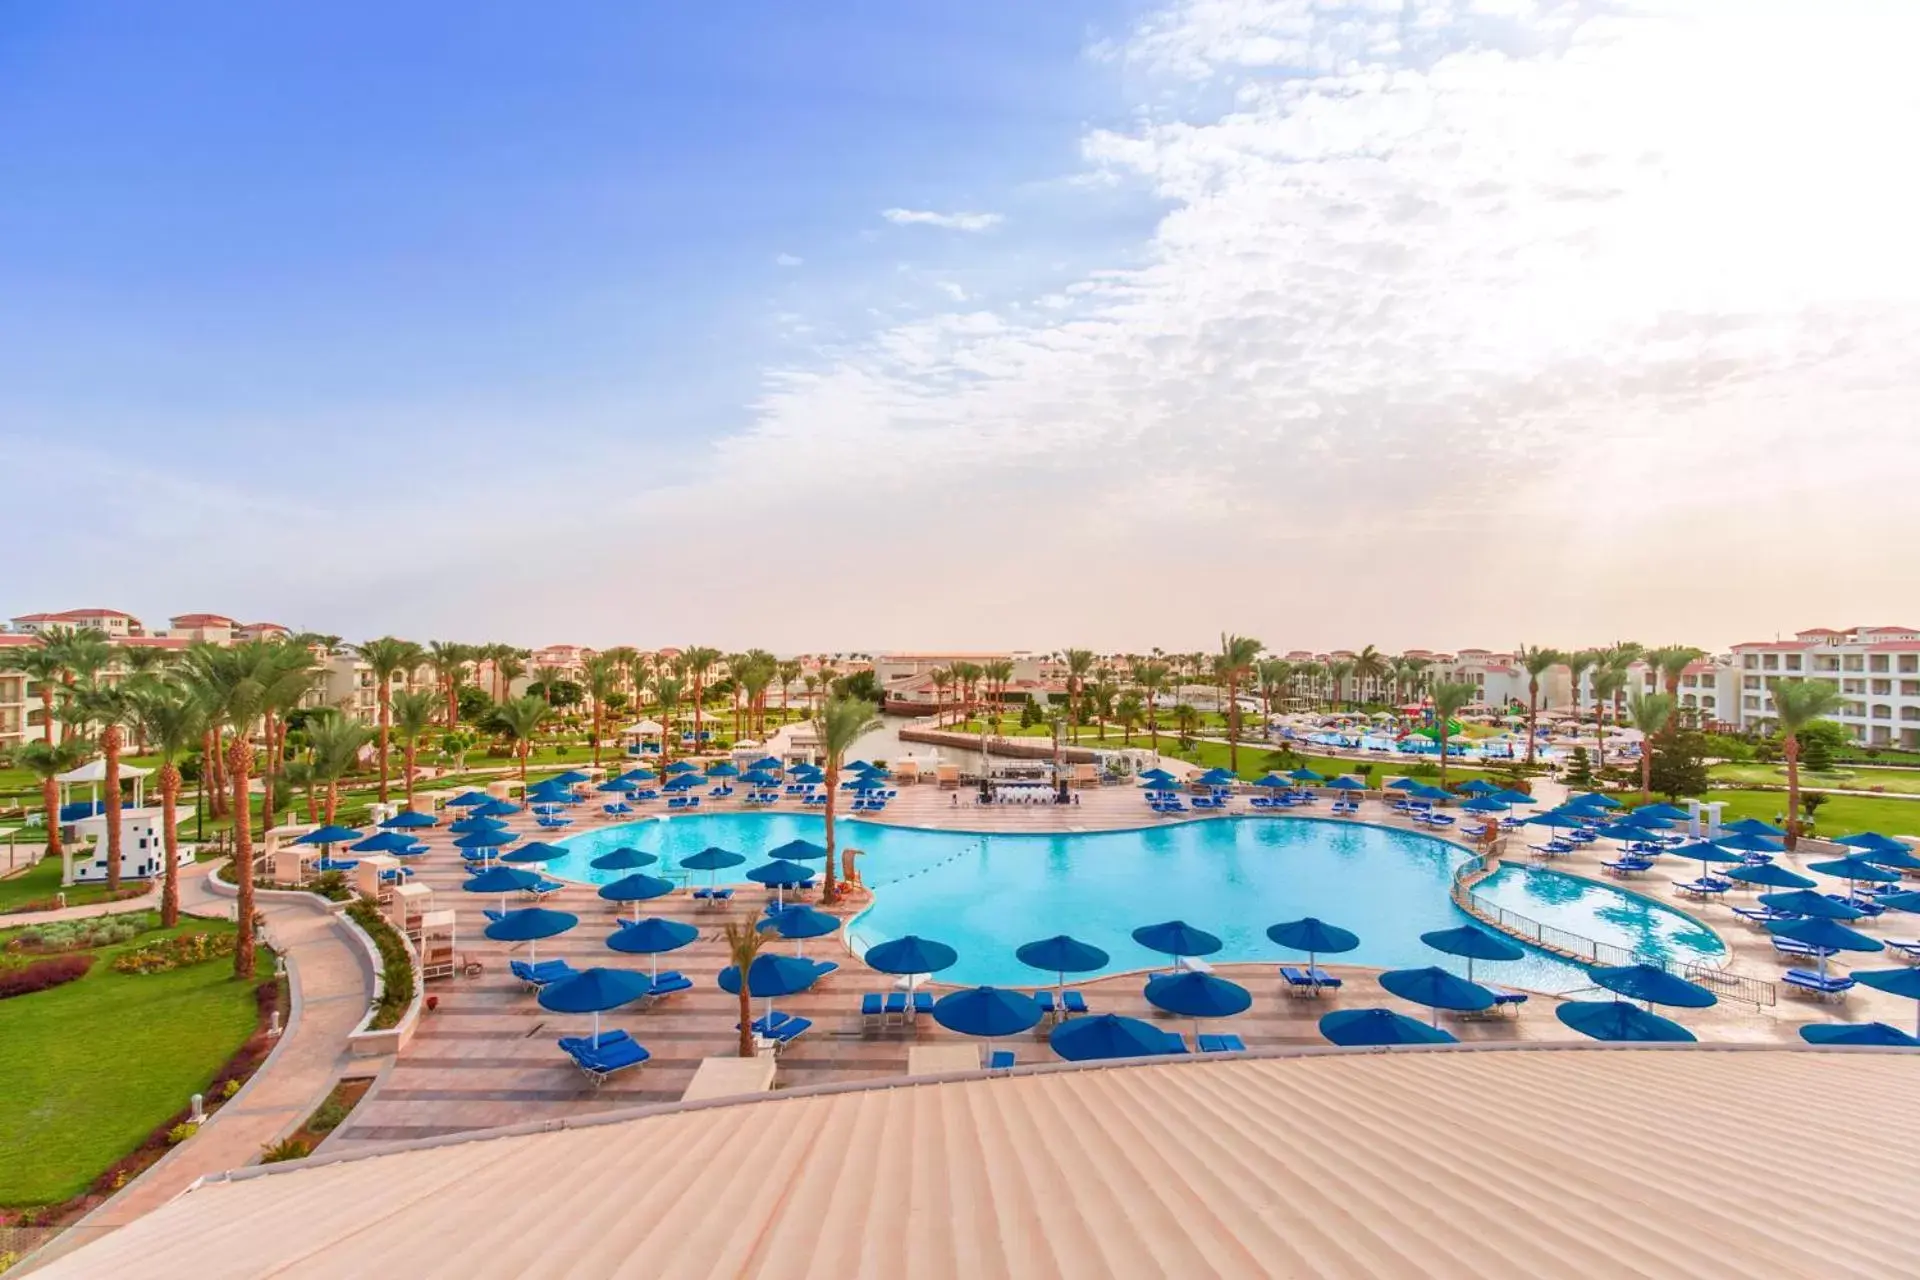 Day, Pool View in Pickalbatros Dana Beach Resort - Hurghada